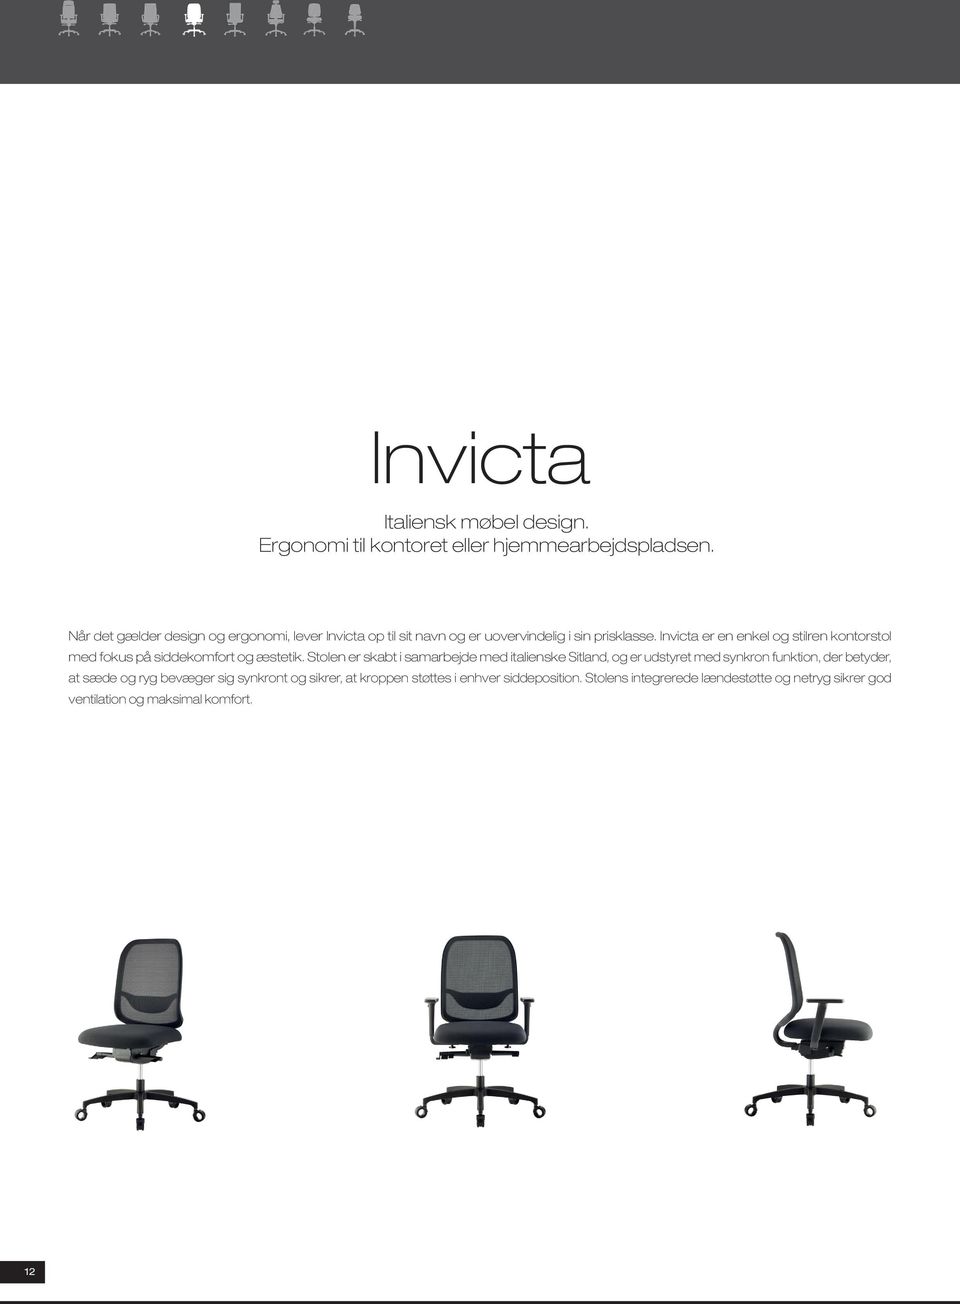 Invicta er en enkel og stilren kontorstol med fokus på siddekomfort og æstetik.